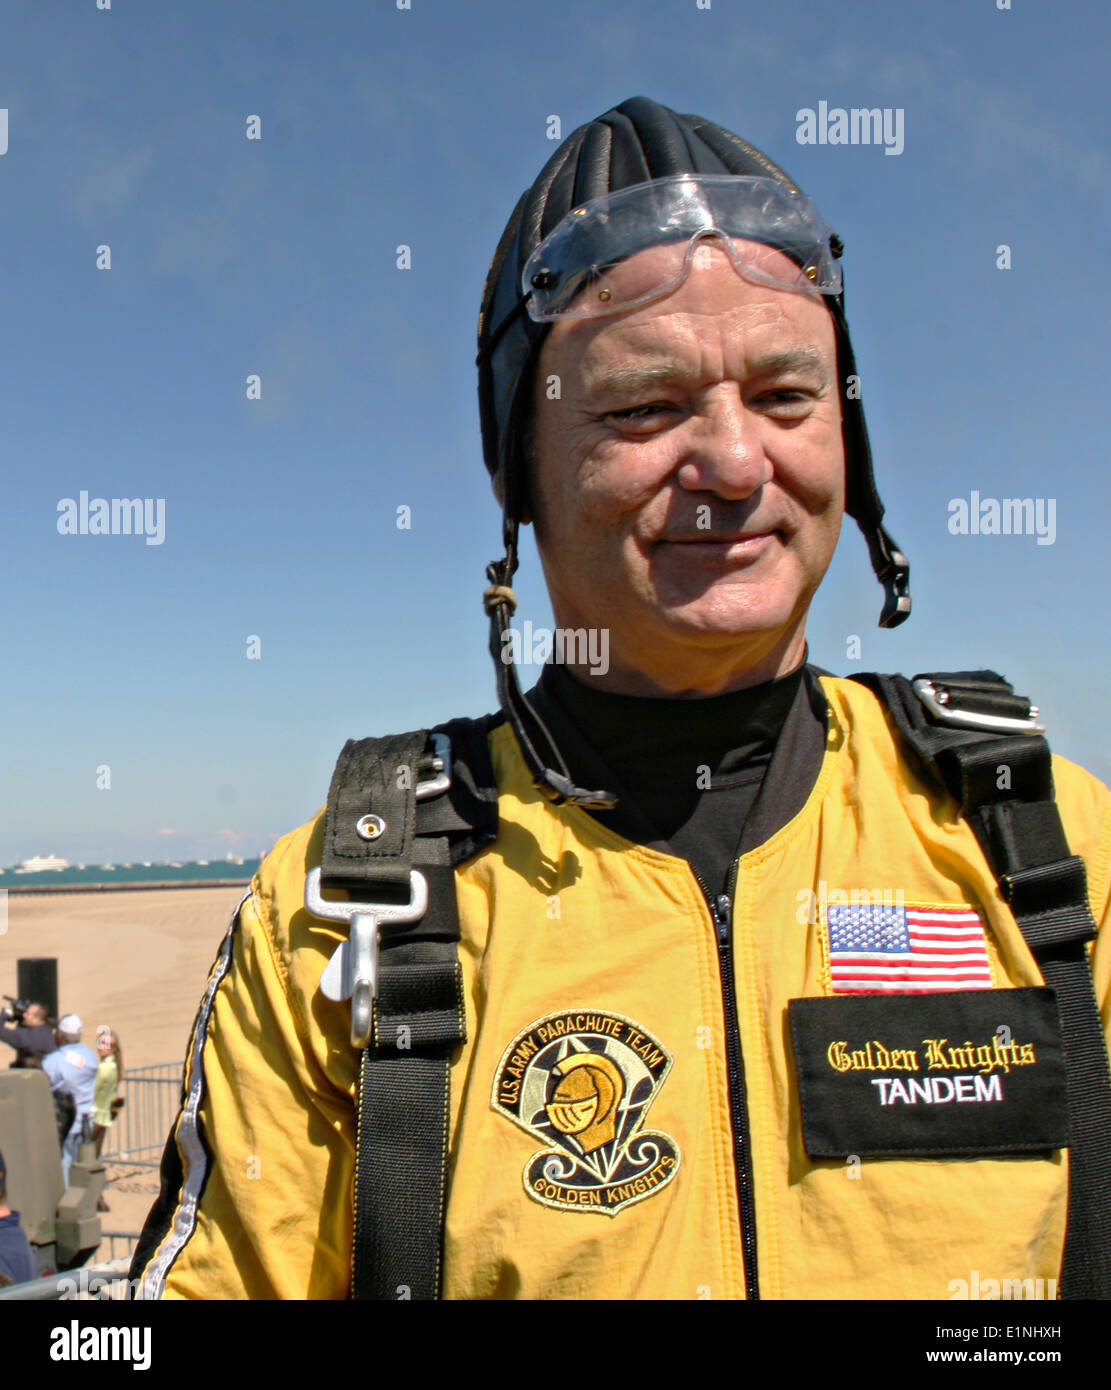 Attore Bill Murray sorride dopo il parapendio in tandem con la US Army Golden Knights Parachute Team in occasione del cinquantesimo di Chicago annuale di aria e acqua mostrano a North Avenue Beach Agosto 15, 2008 a Chicago, IL. Foto Stock